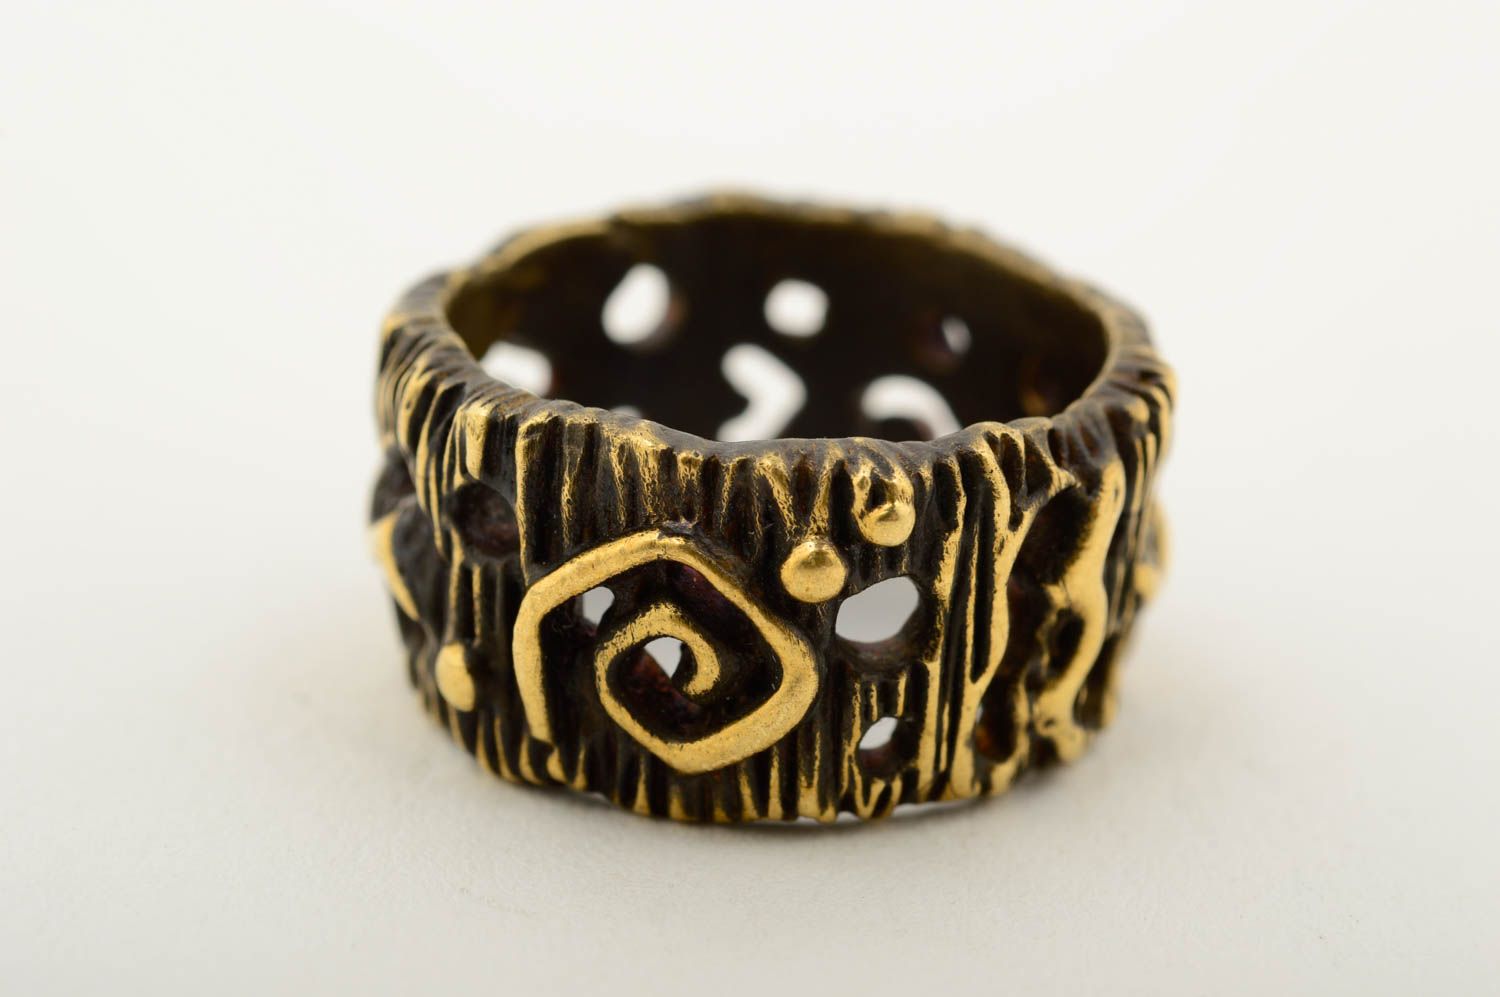 Handmade bronze ring metal ring handmade bronze jewelry fashion accessories photo 4